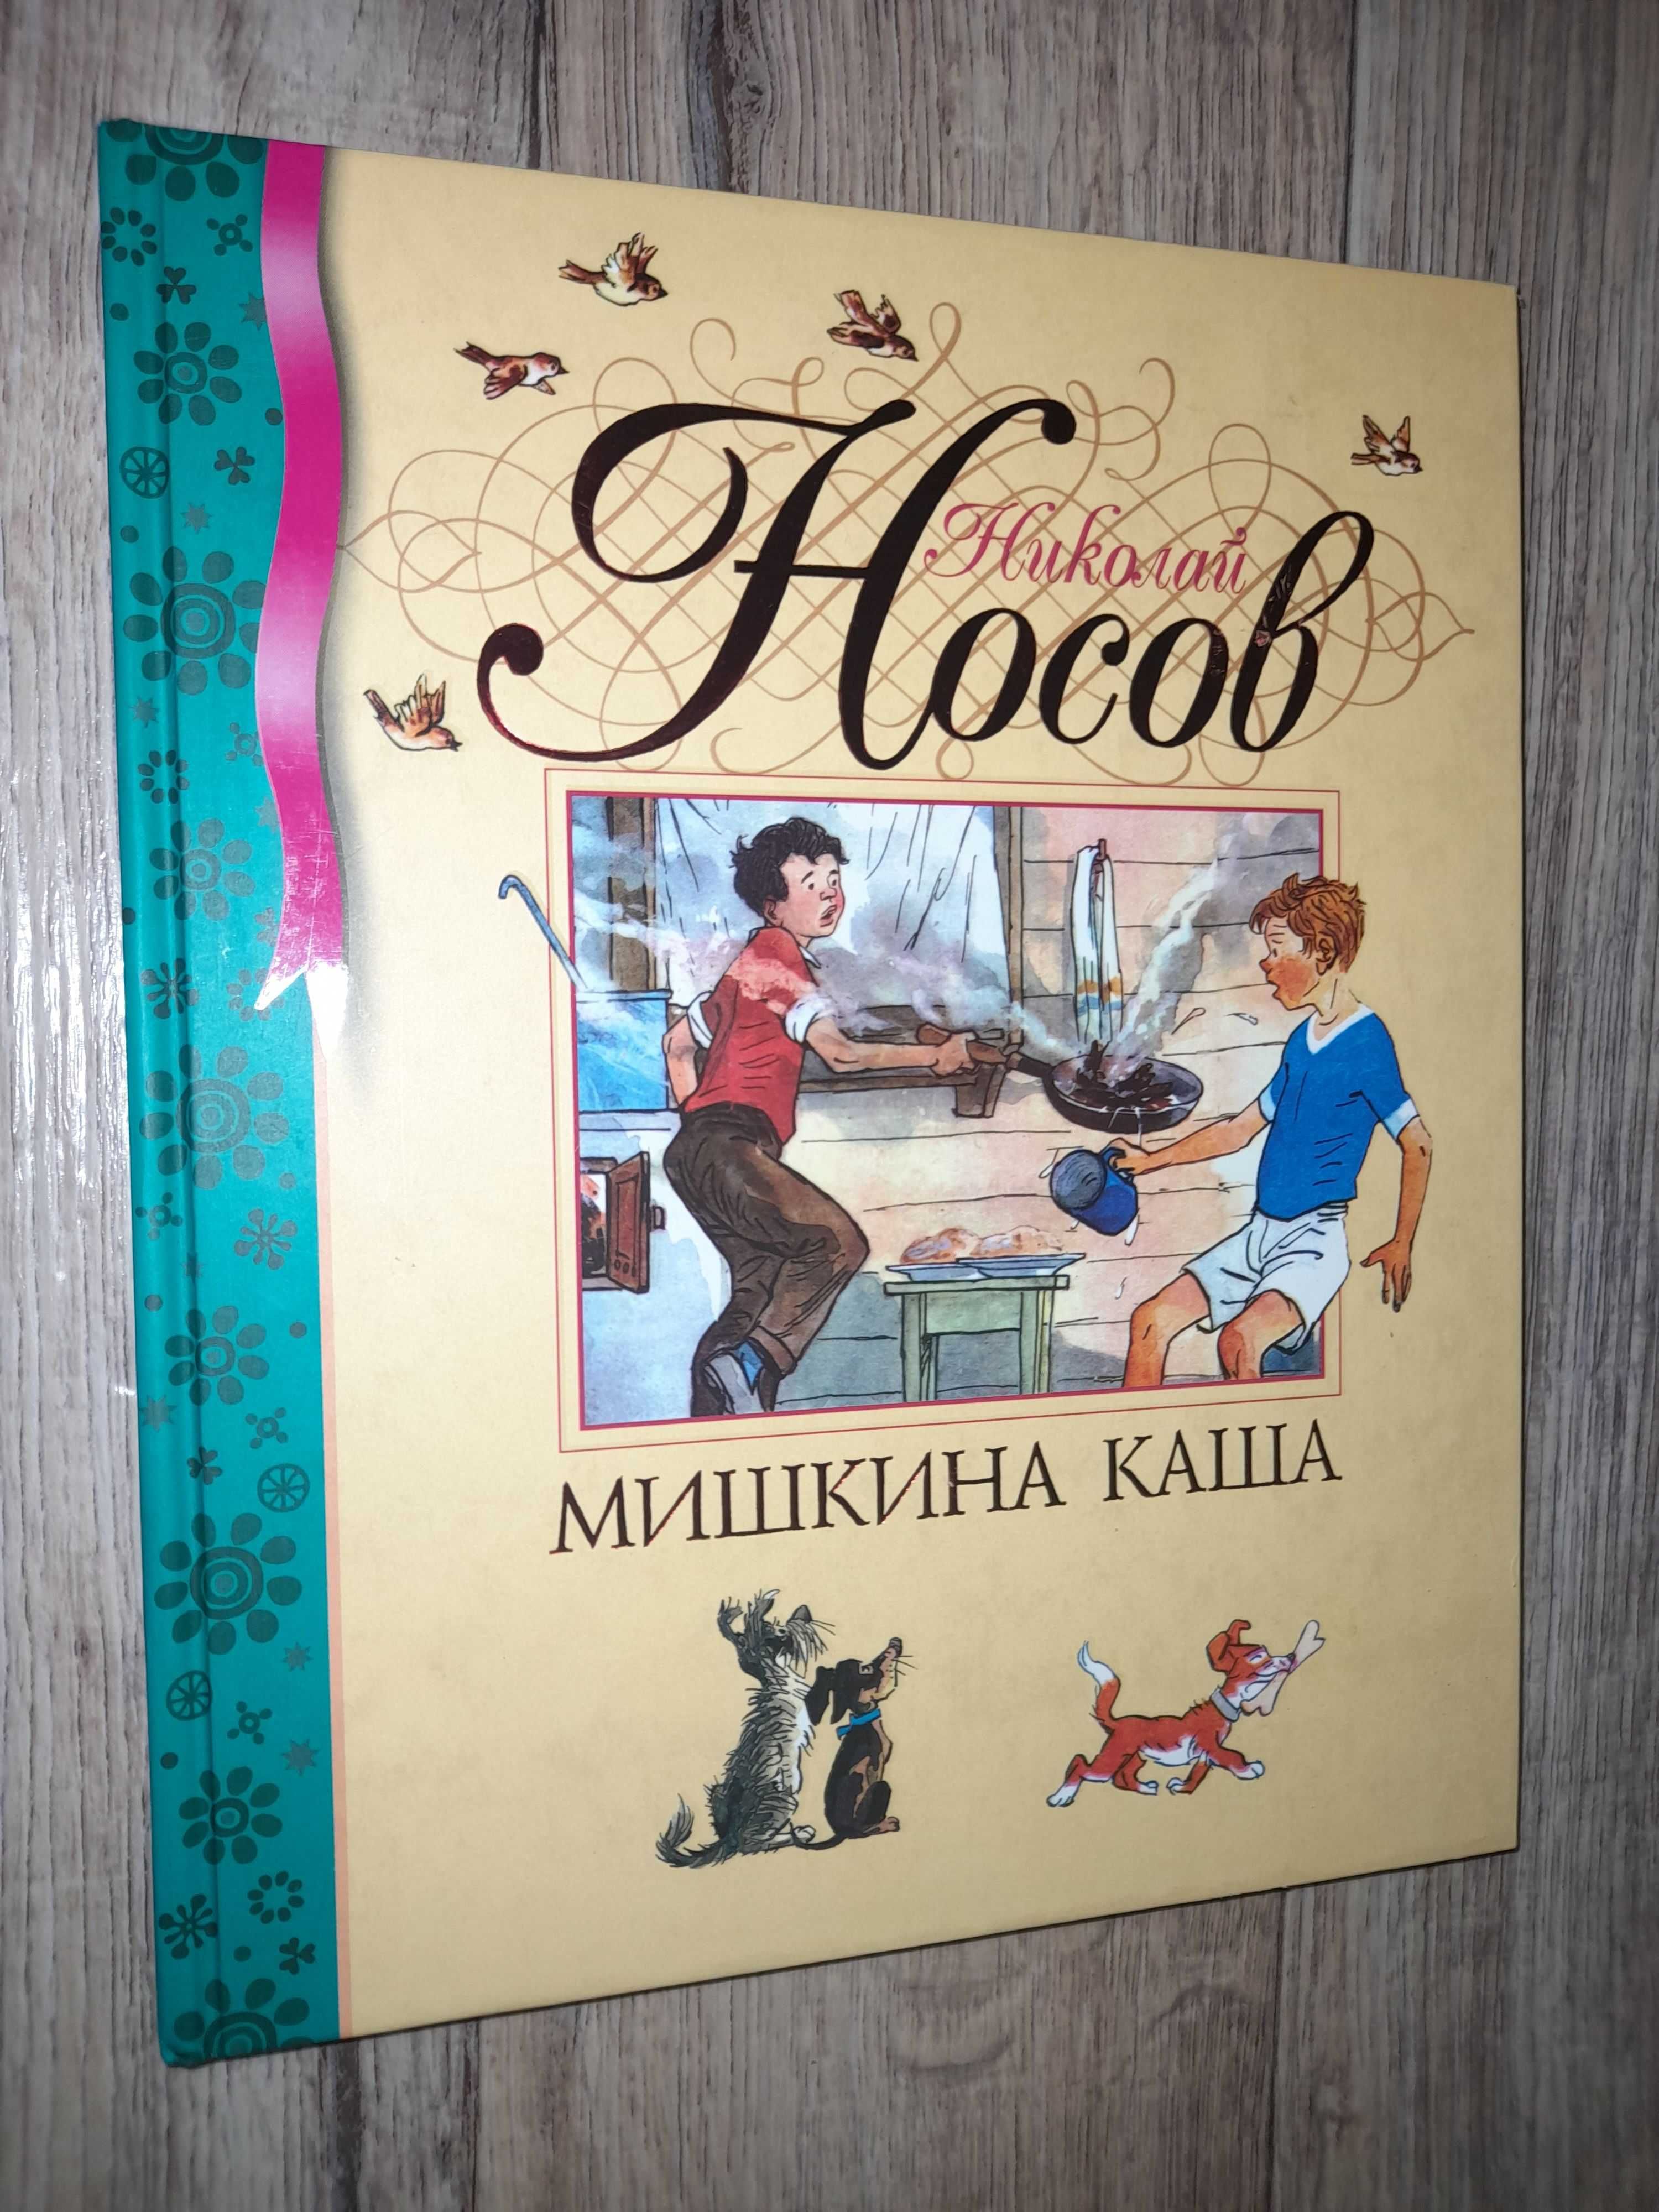 Детские книги - Михалков, Волков, Носов.